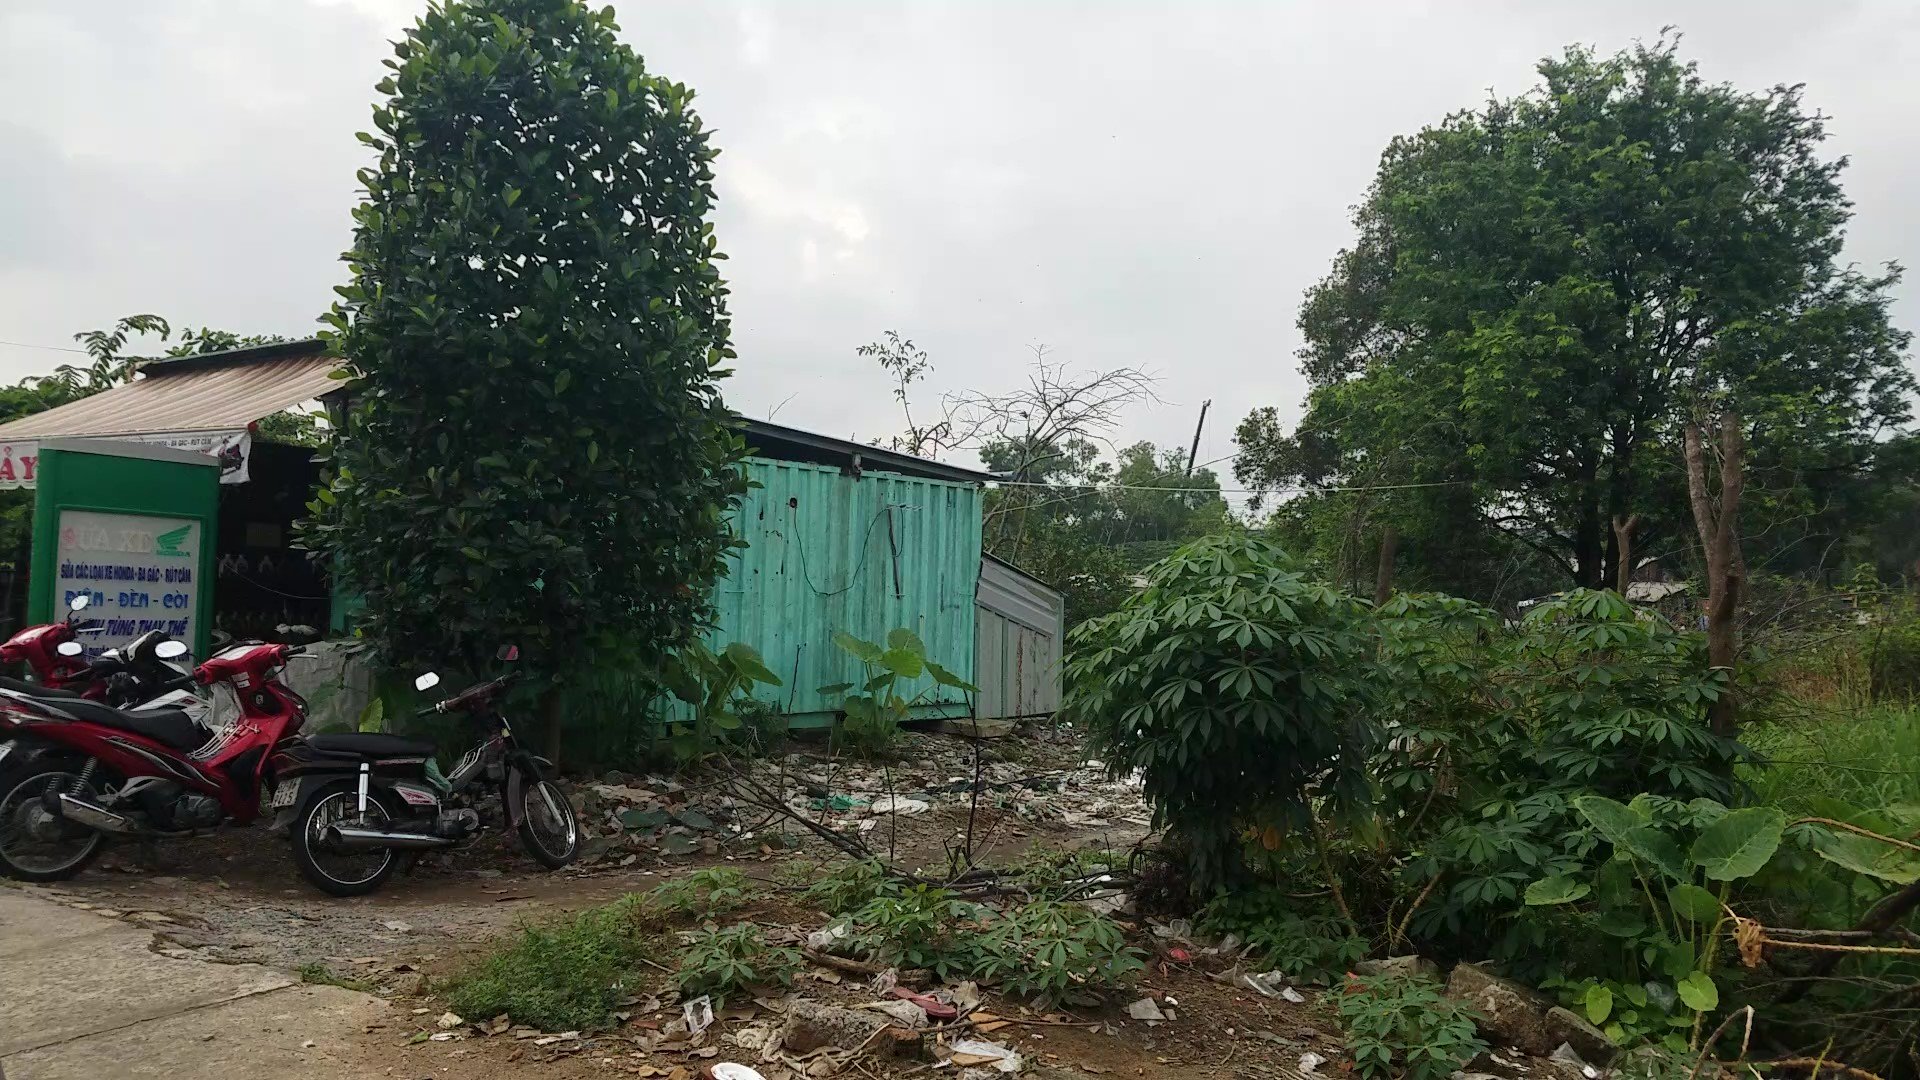 Người đàn ông tử vong trong căn nhà bằng thùng container ở quận Bình Tân - Ảnh 1.